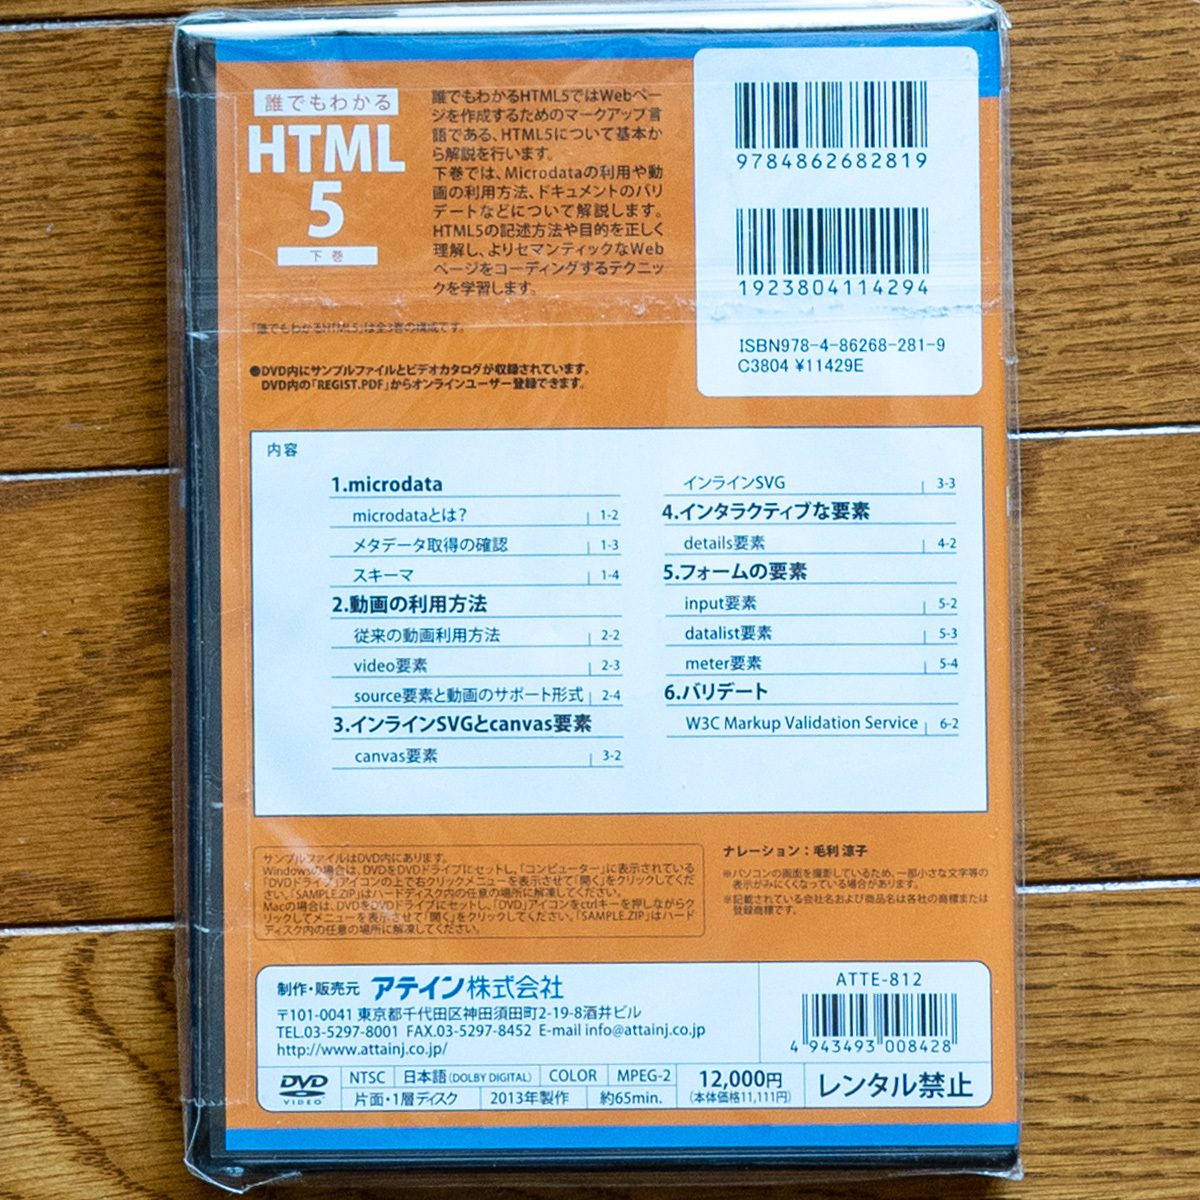 DVD каждый понимать HTML5 ( сверху, средний, внизу ) 3 шт общая сумма 36,000 иен внизу шт. нераспечатанный новый товар.